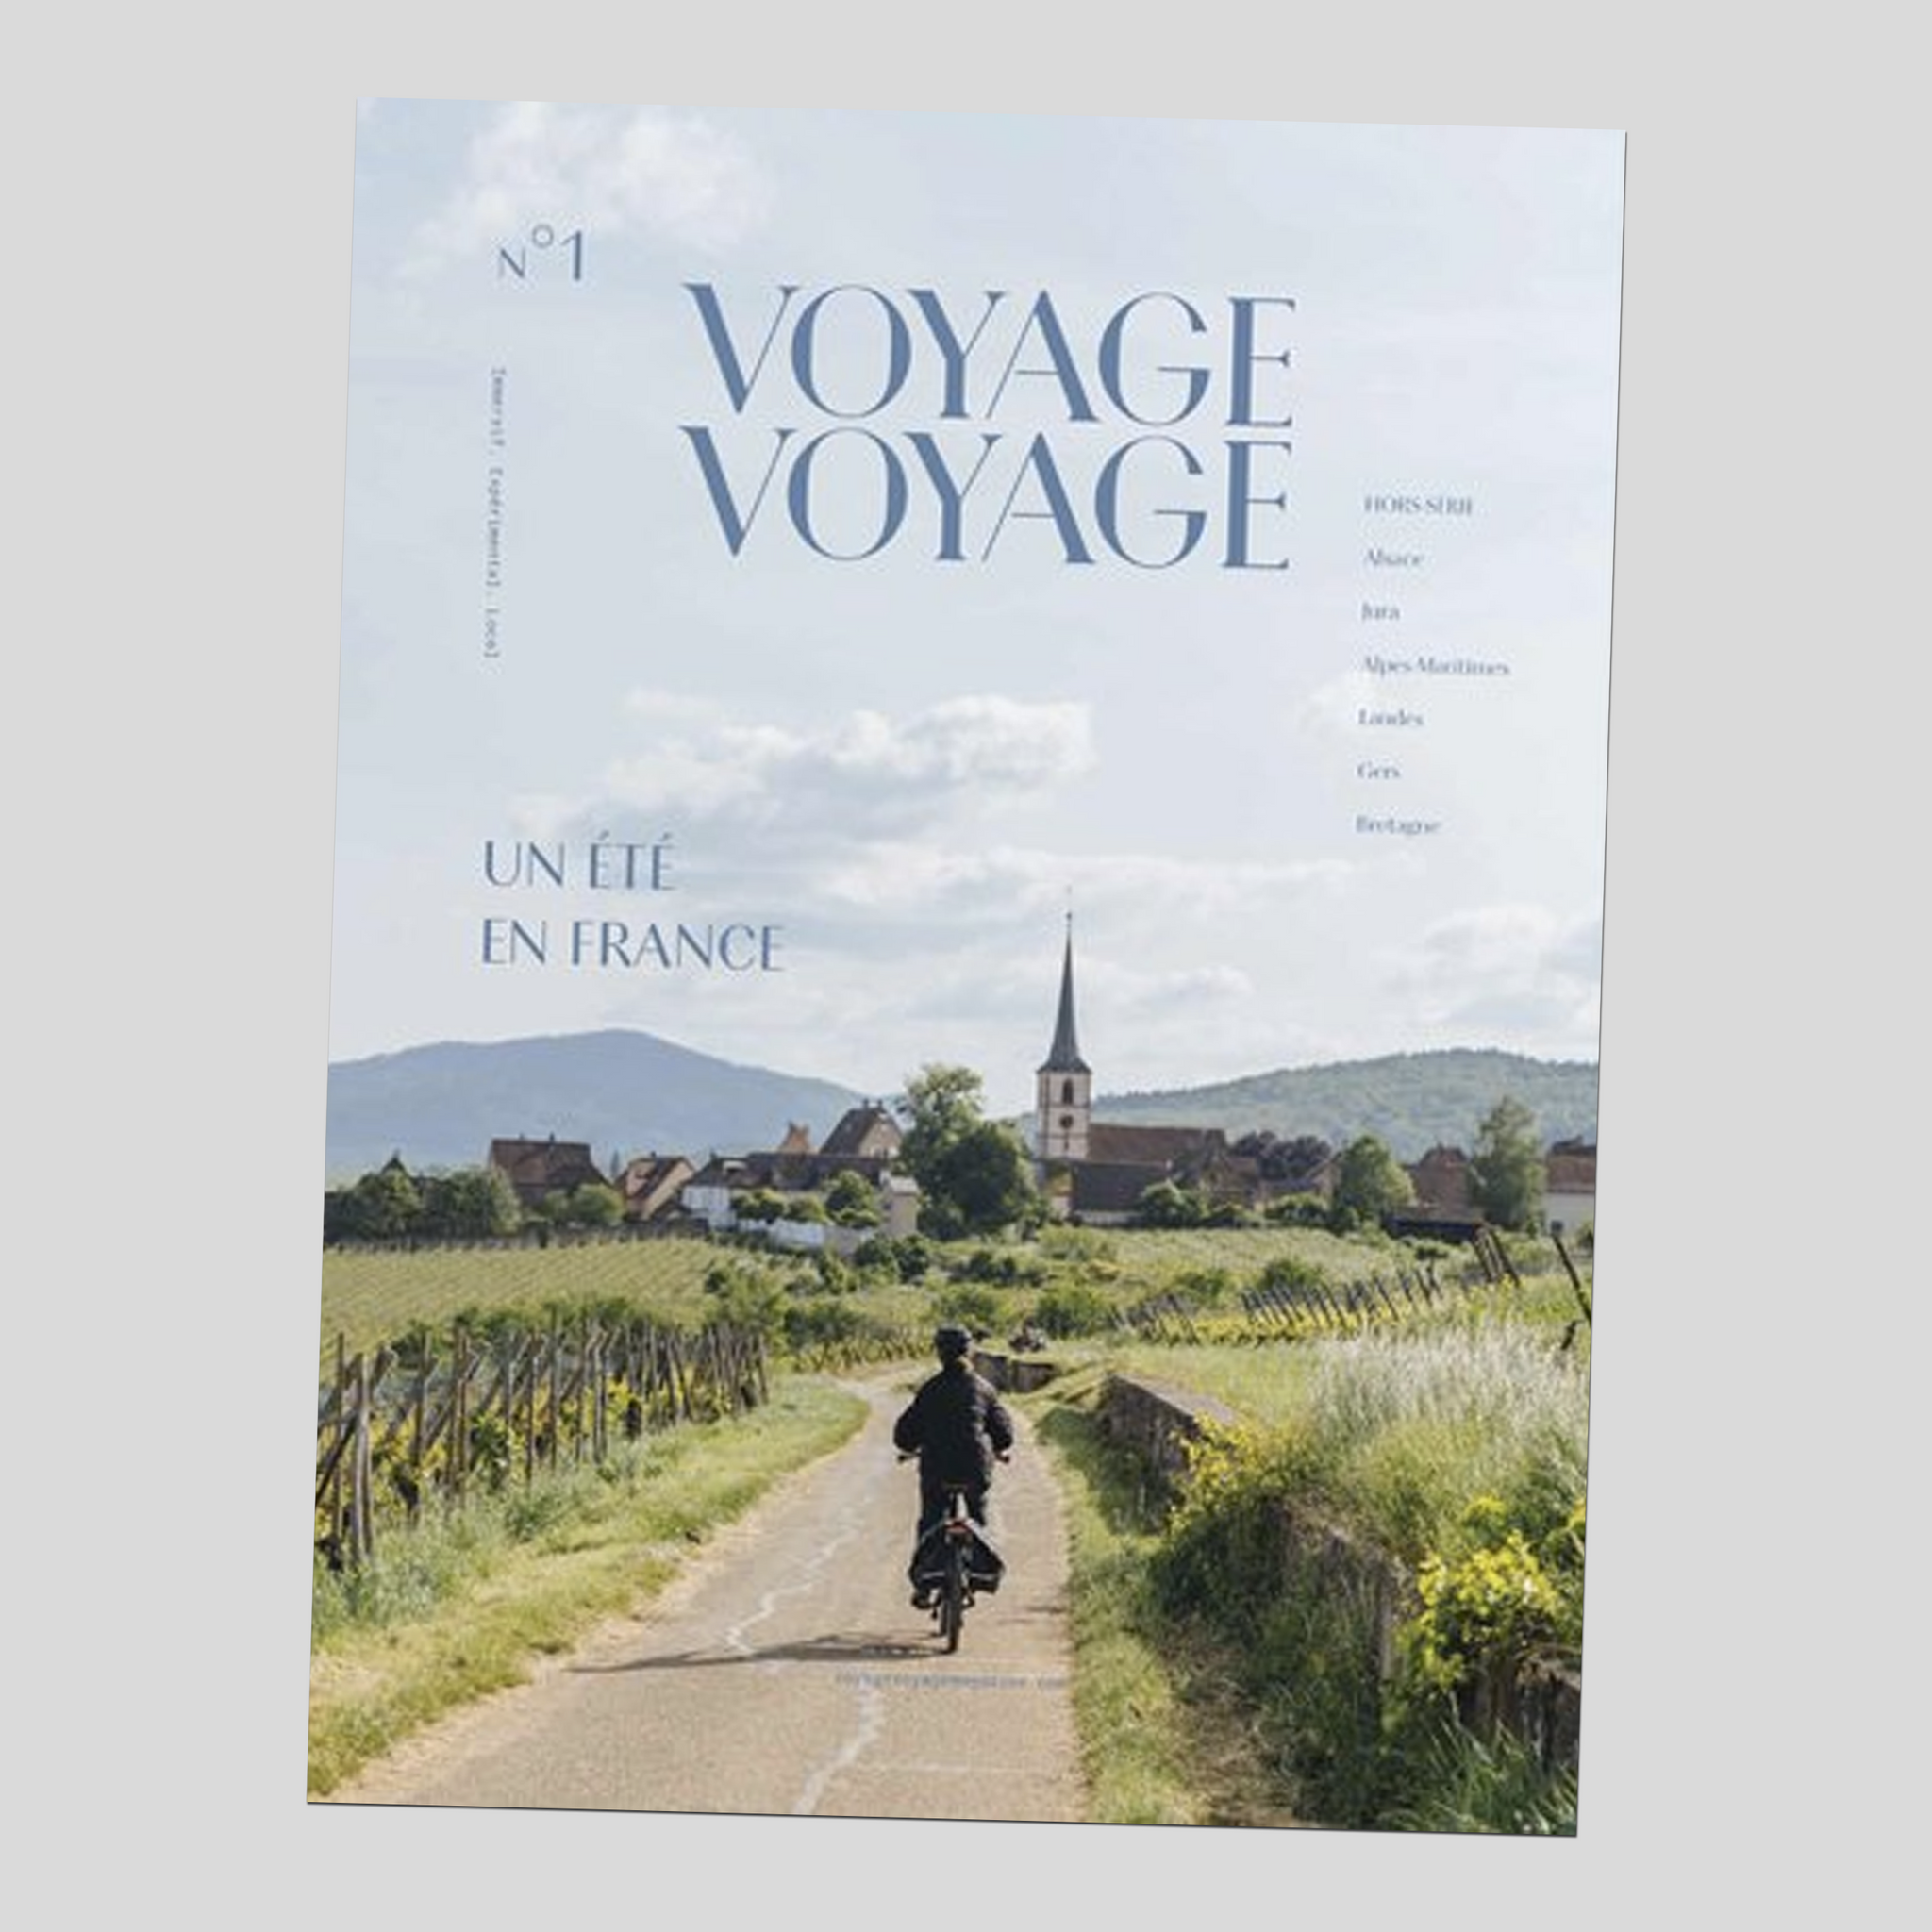 Voyage Voyage magazine #8